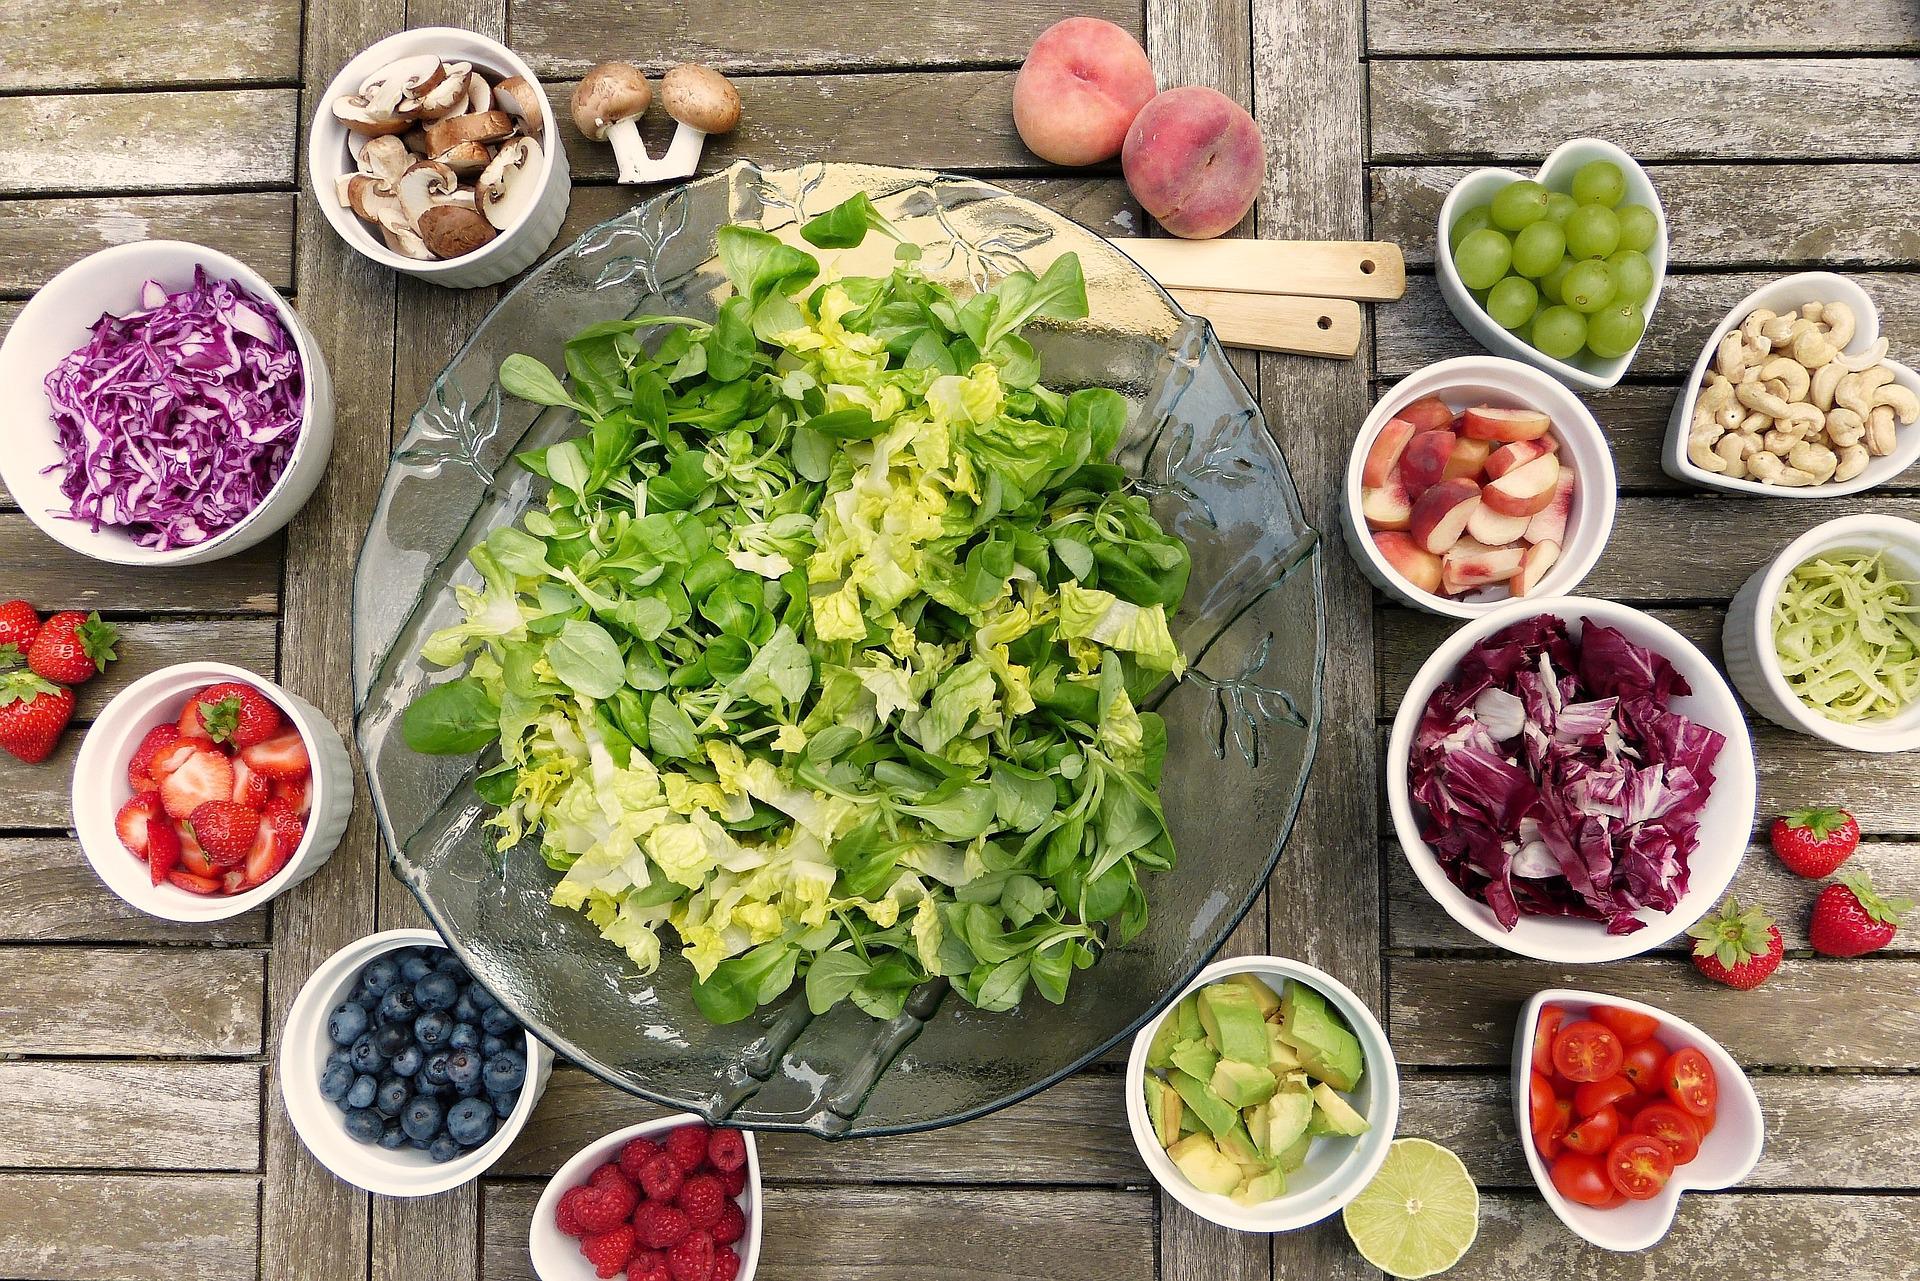 Ein grüner Salat steht in einer farblosen Glasschale in der Bildmitte, ringsherum in kleineren weißen Schalen befinden sich sommerliche Zutaten, z.B. Beeren